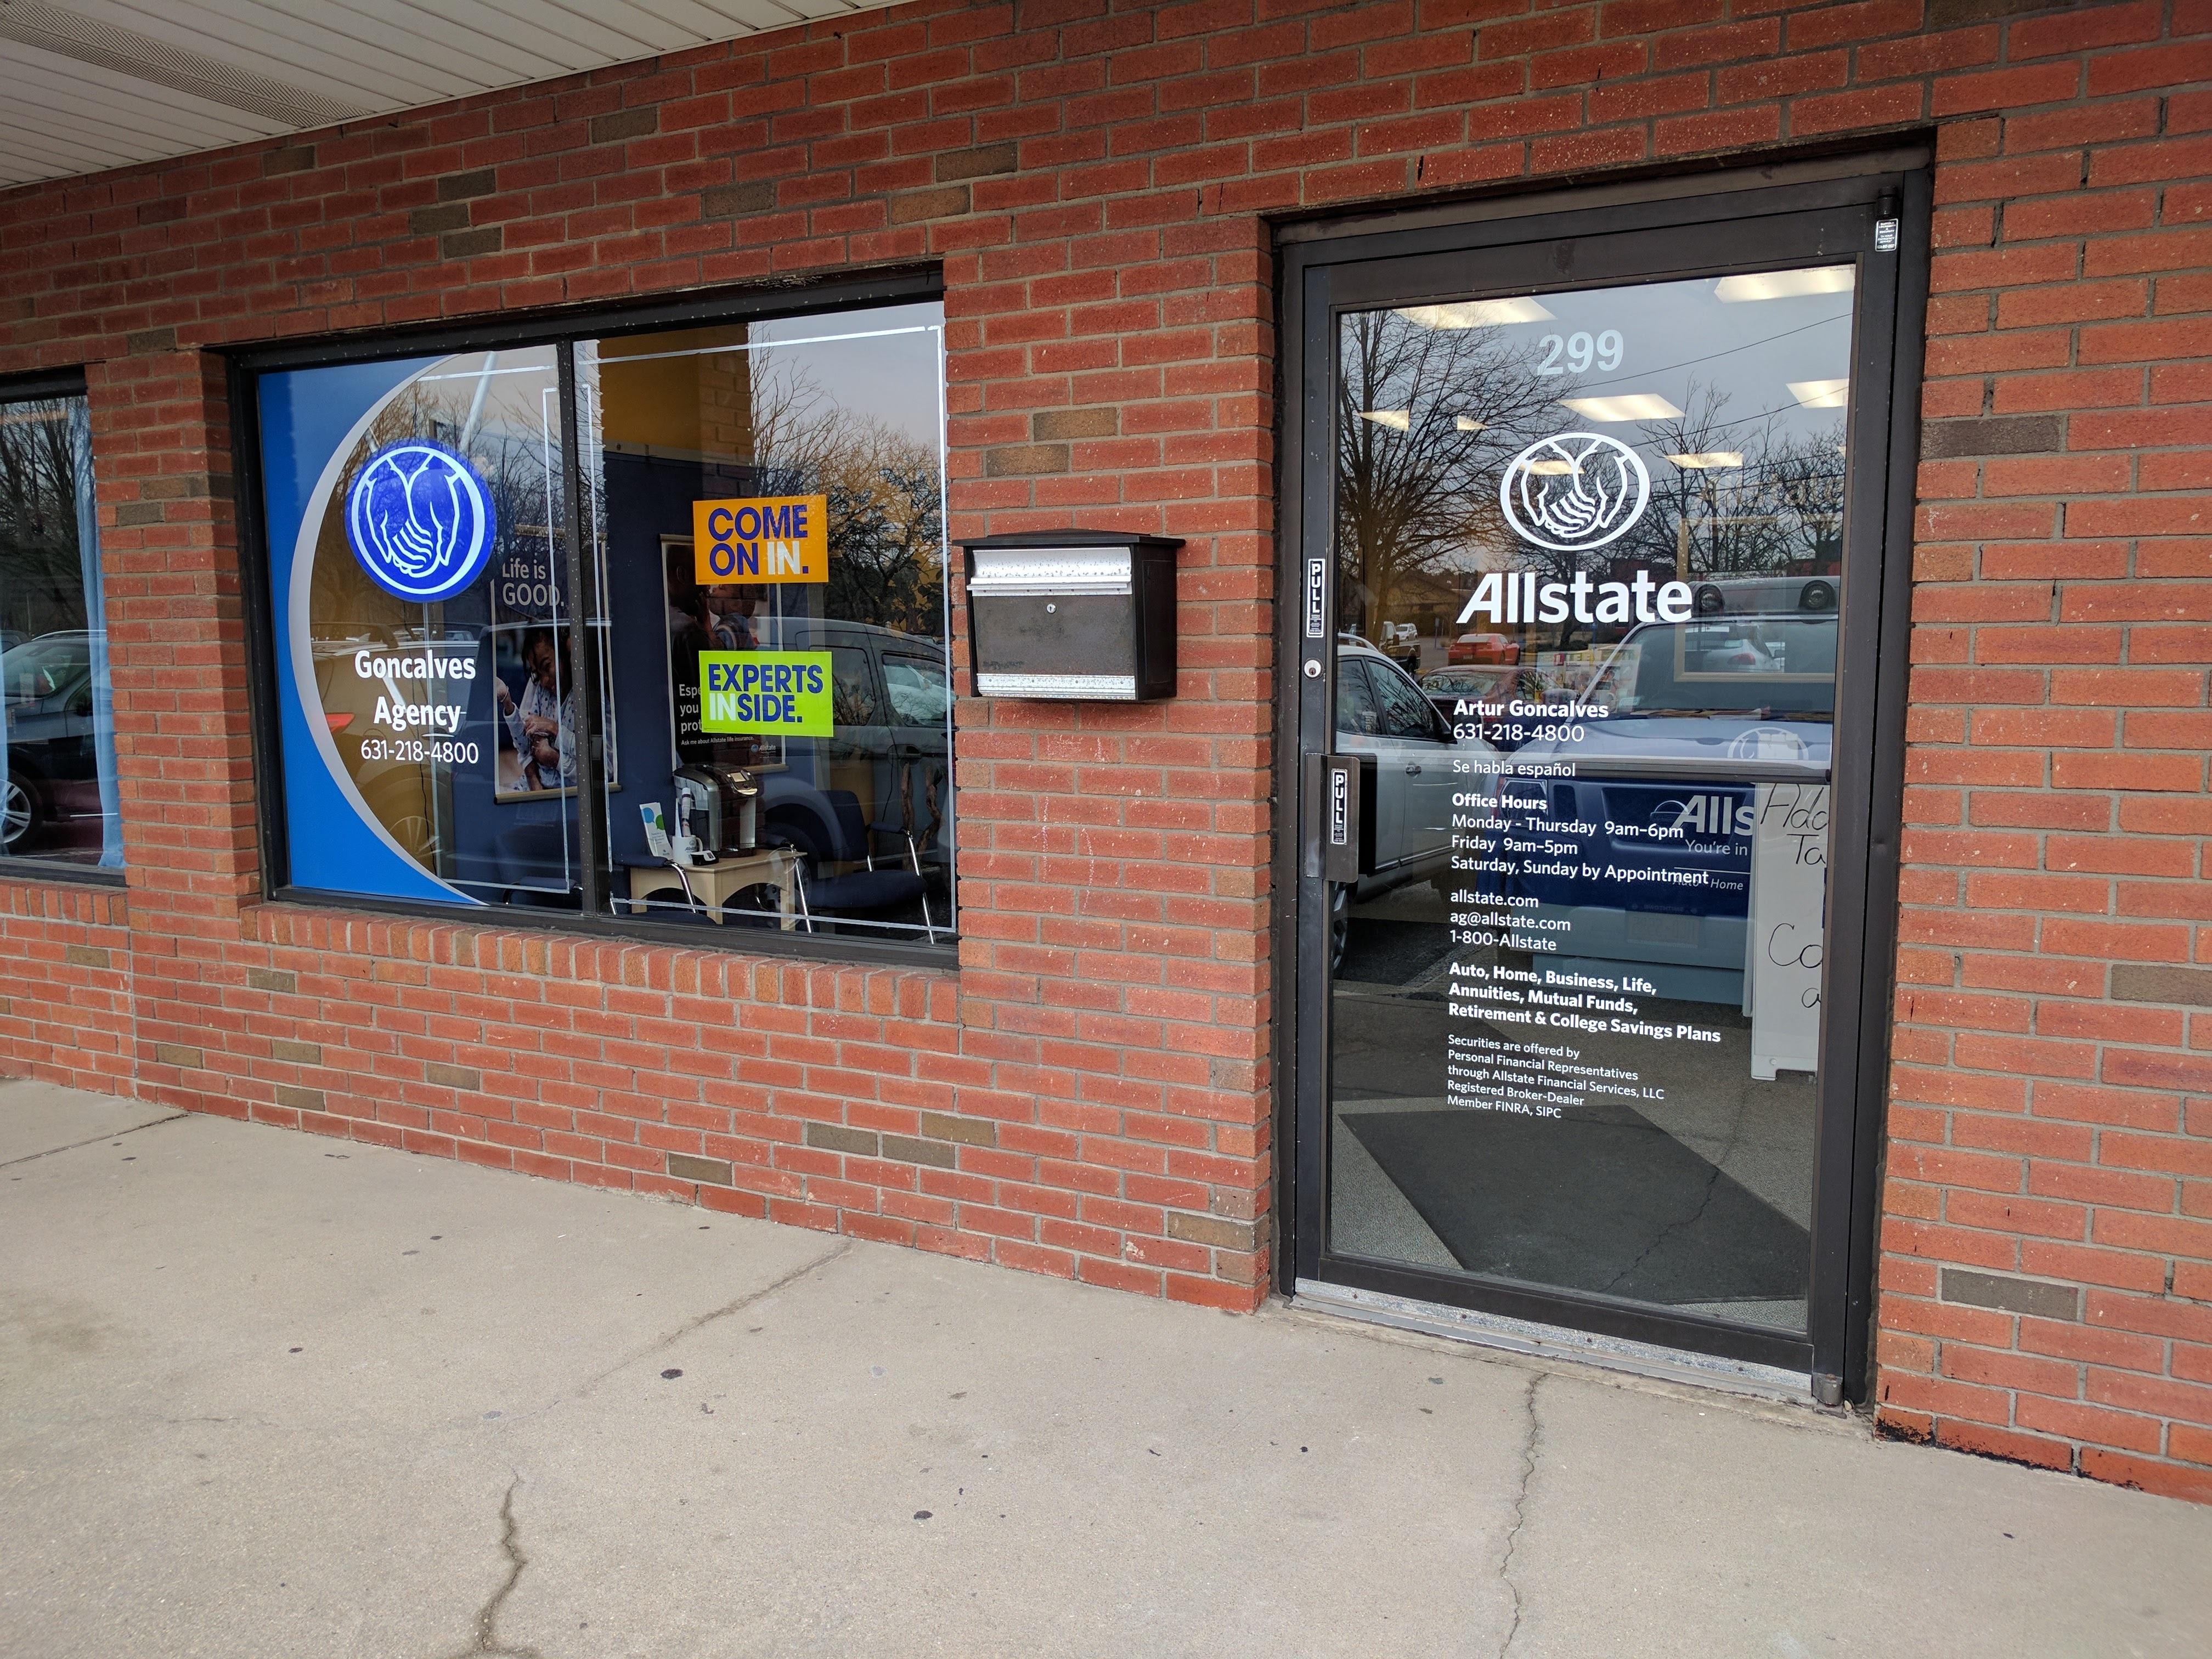 Image 4 | Artur Goncalves: Allstate Insurance